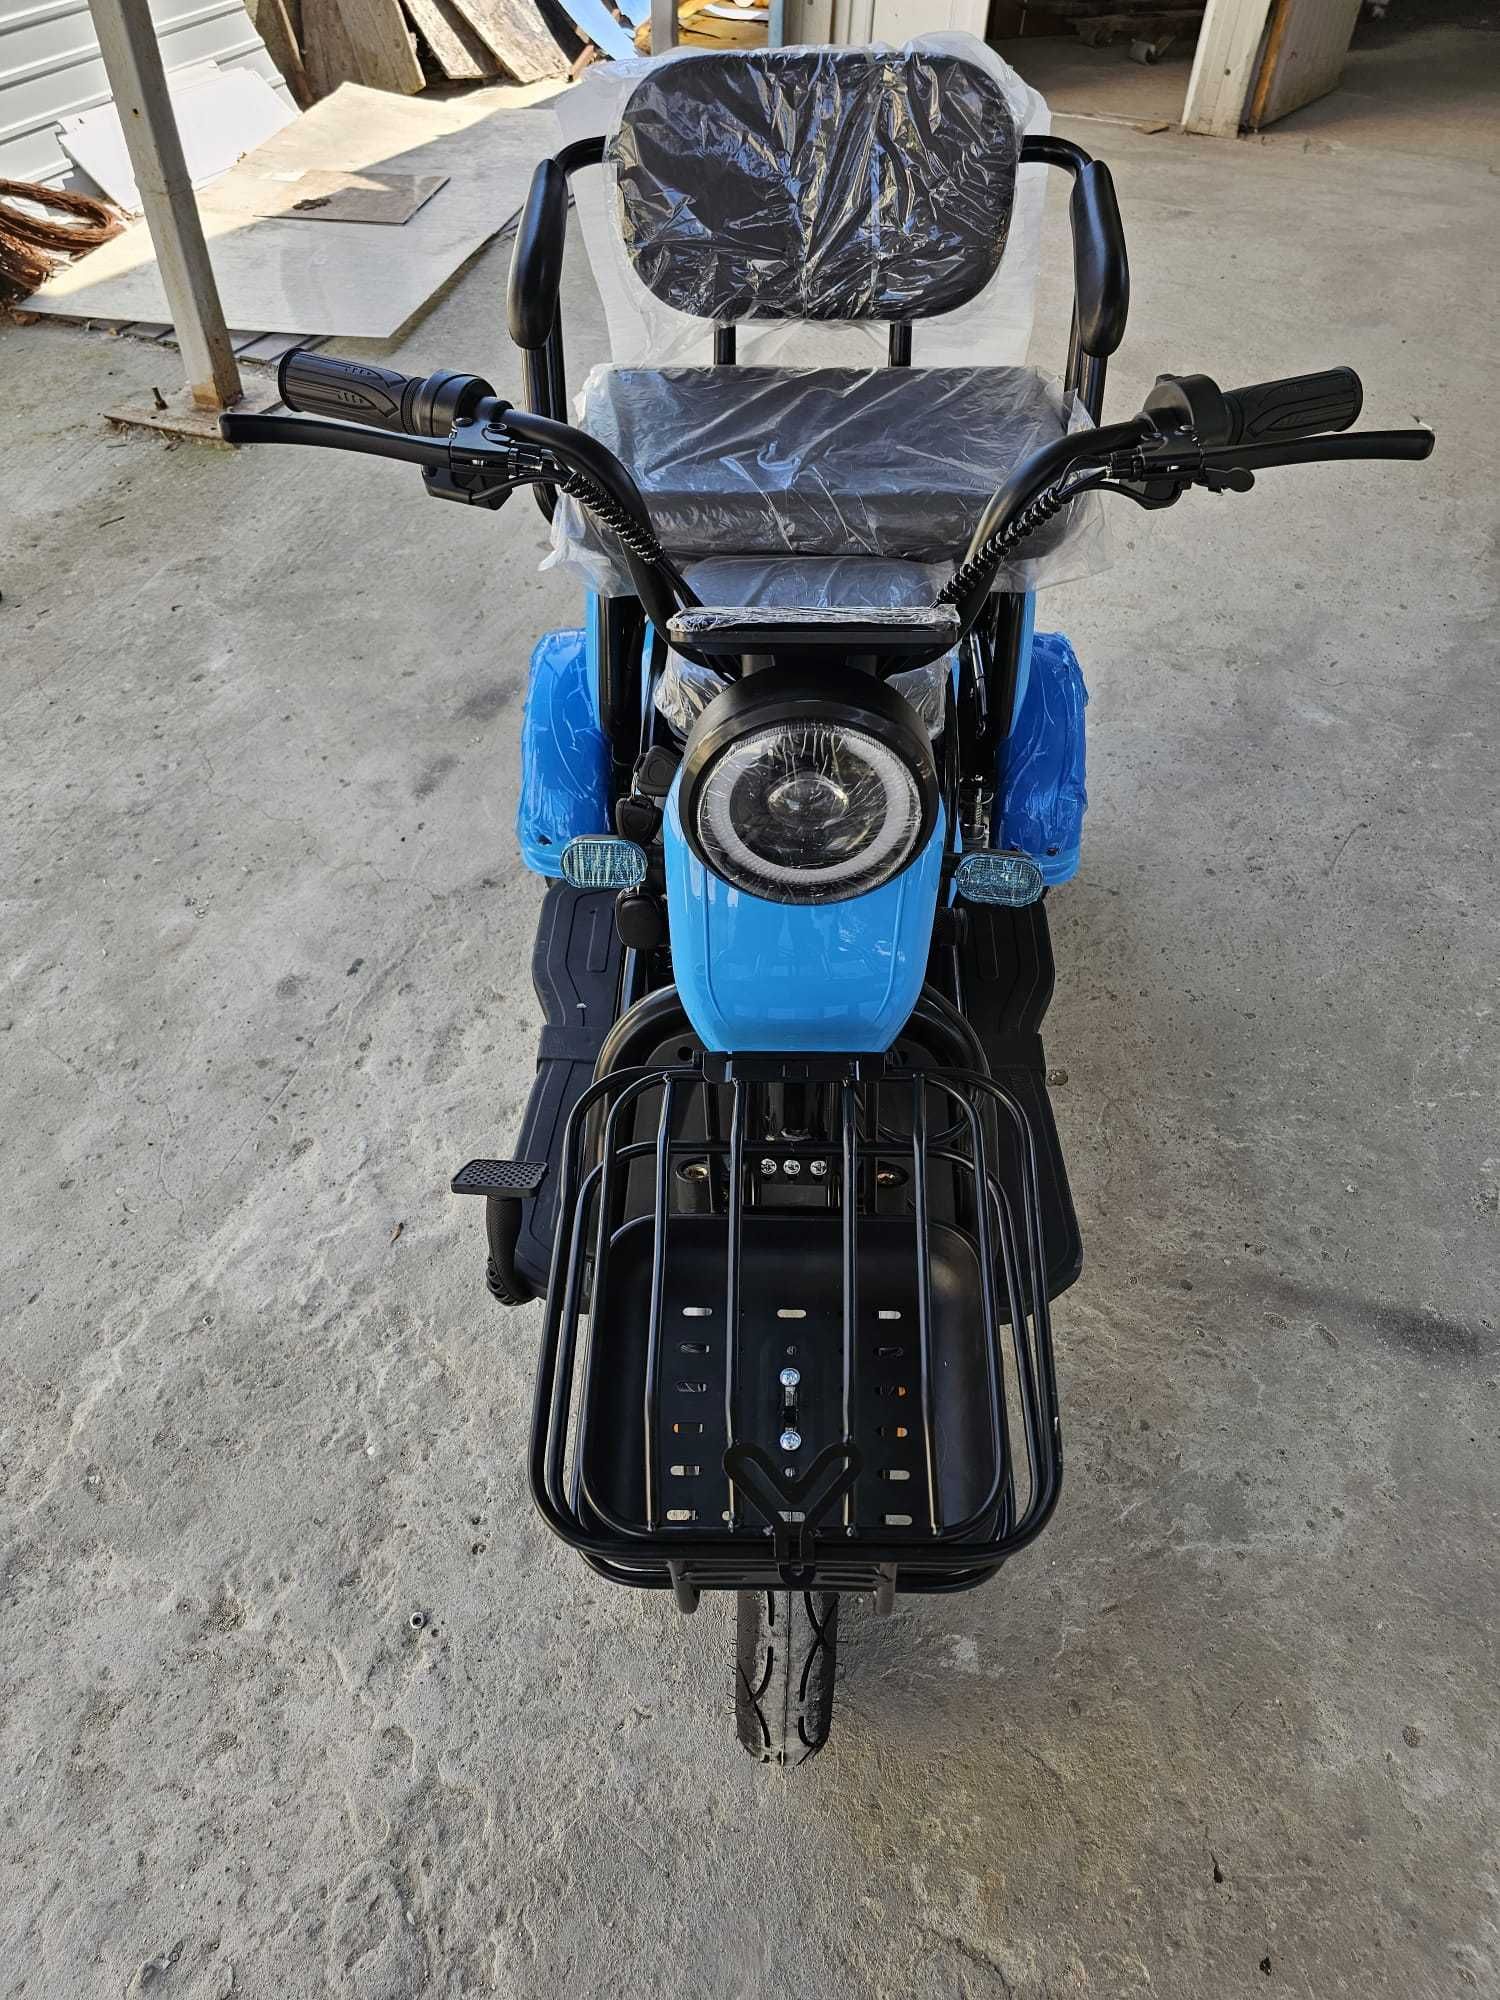 Tricicleta scuter electric -30%! Livrare cu verificare, garantie 2 ani